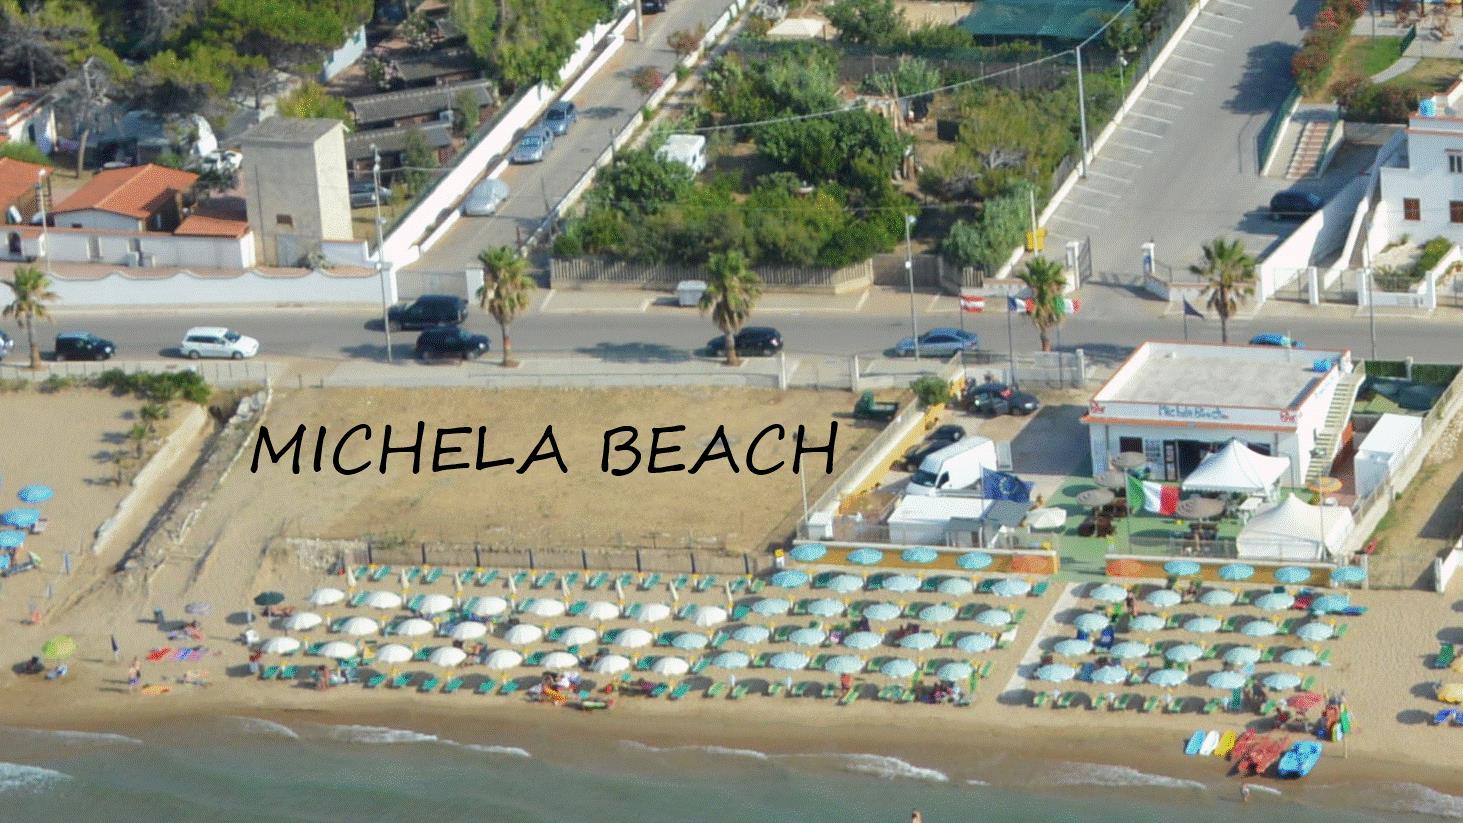 MICHELA BEACH